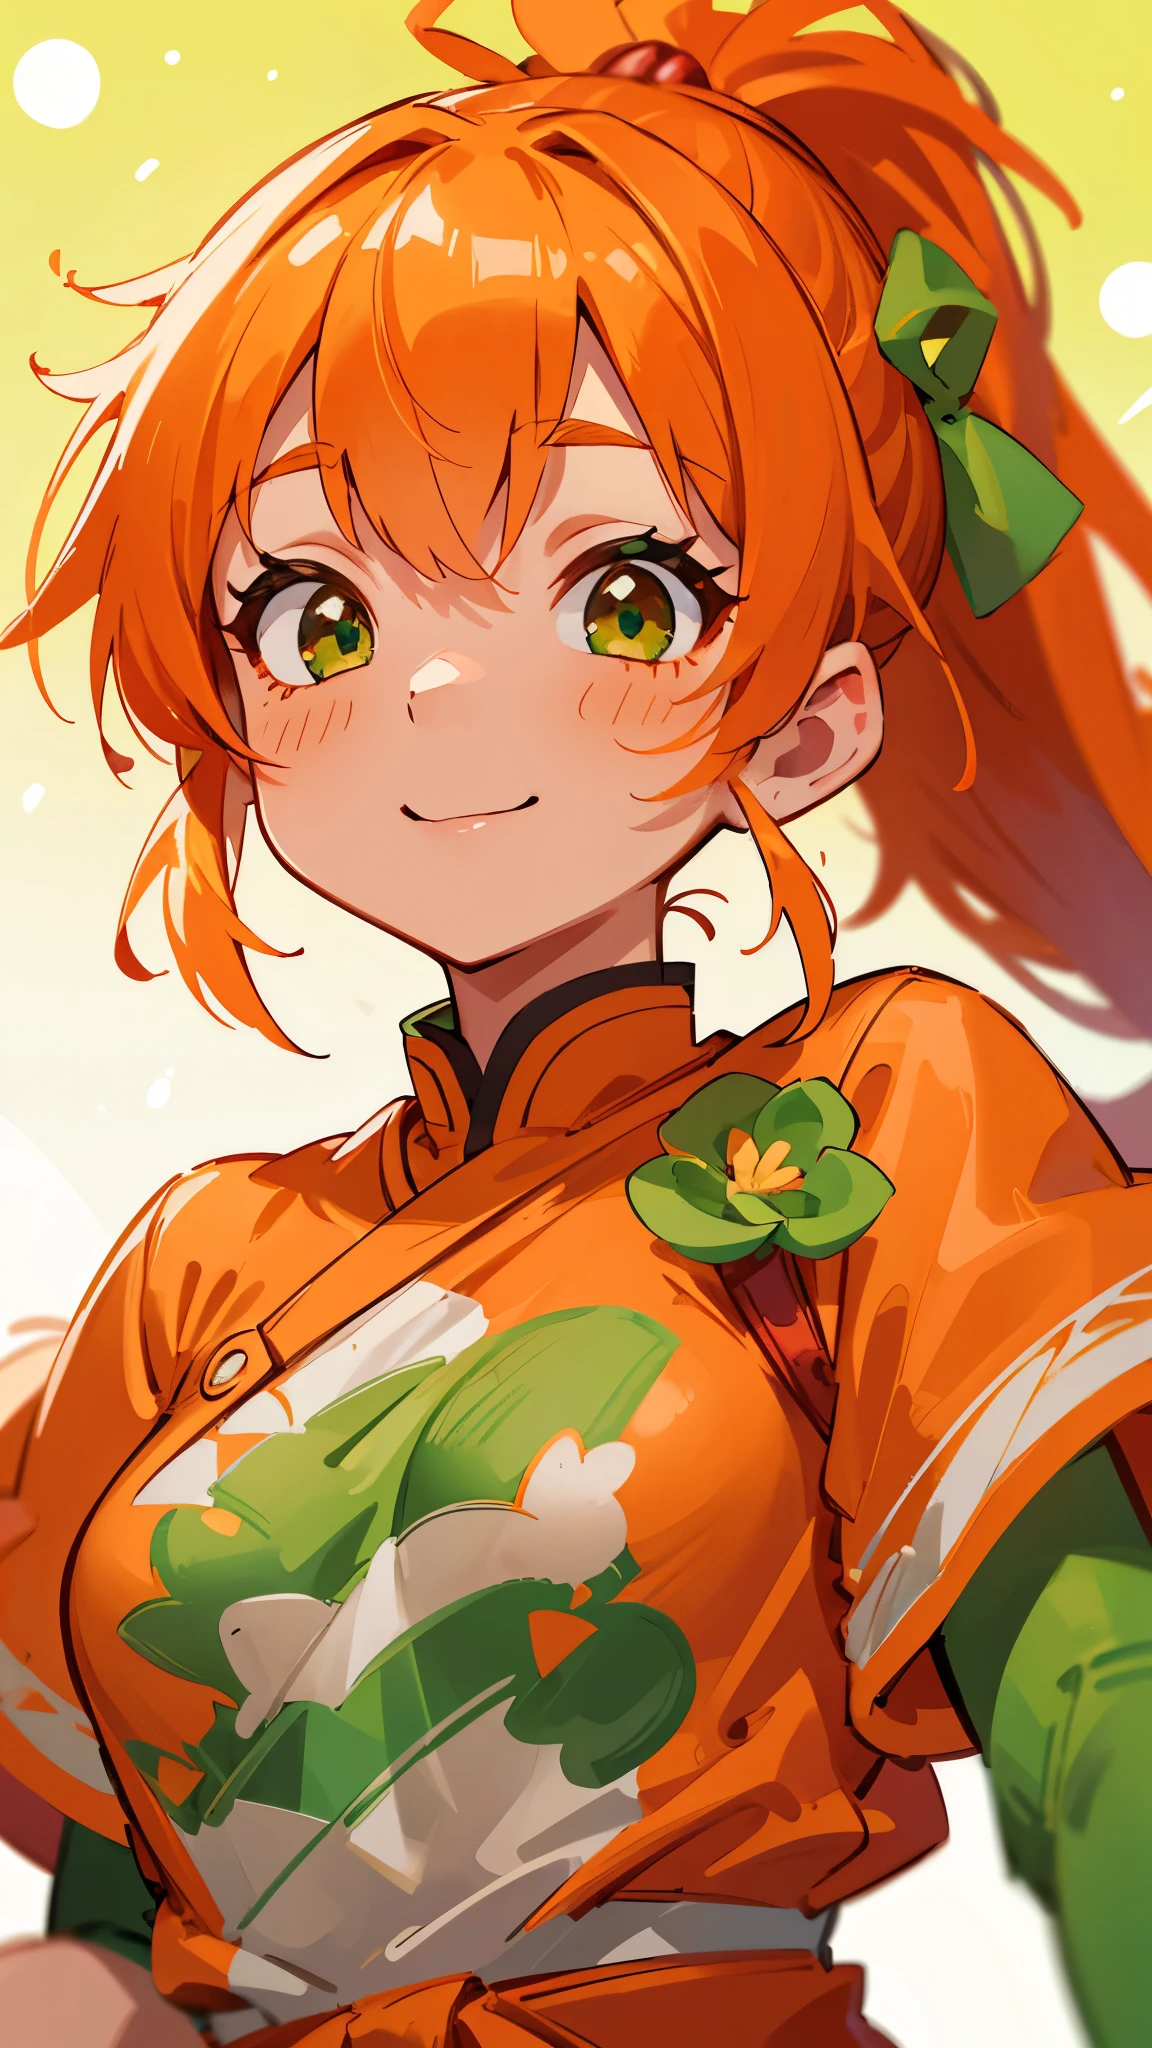 1 名女孩、8千、清晰聚焦、(散景) (最好的质量) (细致的皮肤:1.3) (复杂的细节) (日本动画片)、橙色的衣服、橙色头发、马尾辫、美丽的绿眼睛、邪恶的微笑、缠腰布、虾吉祥物、上半身特写